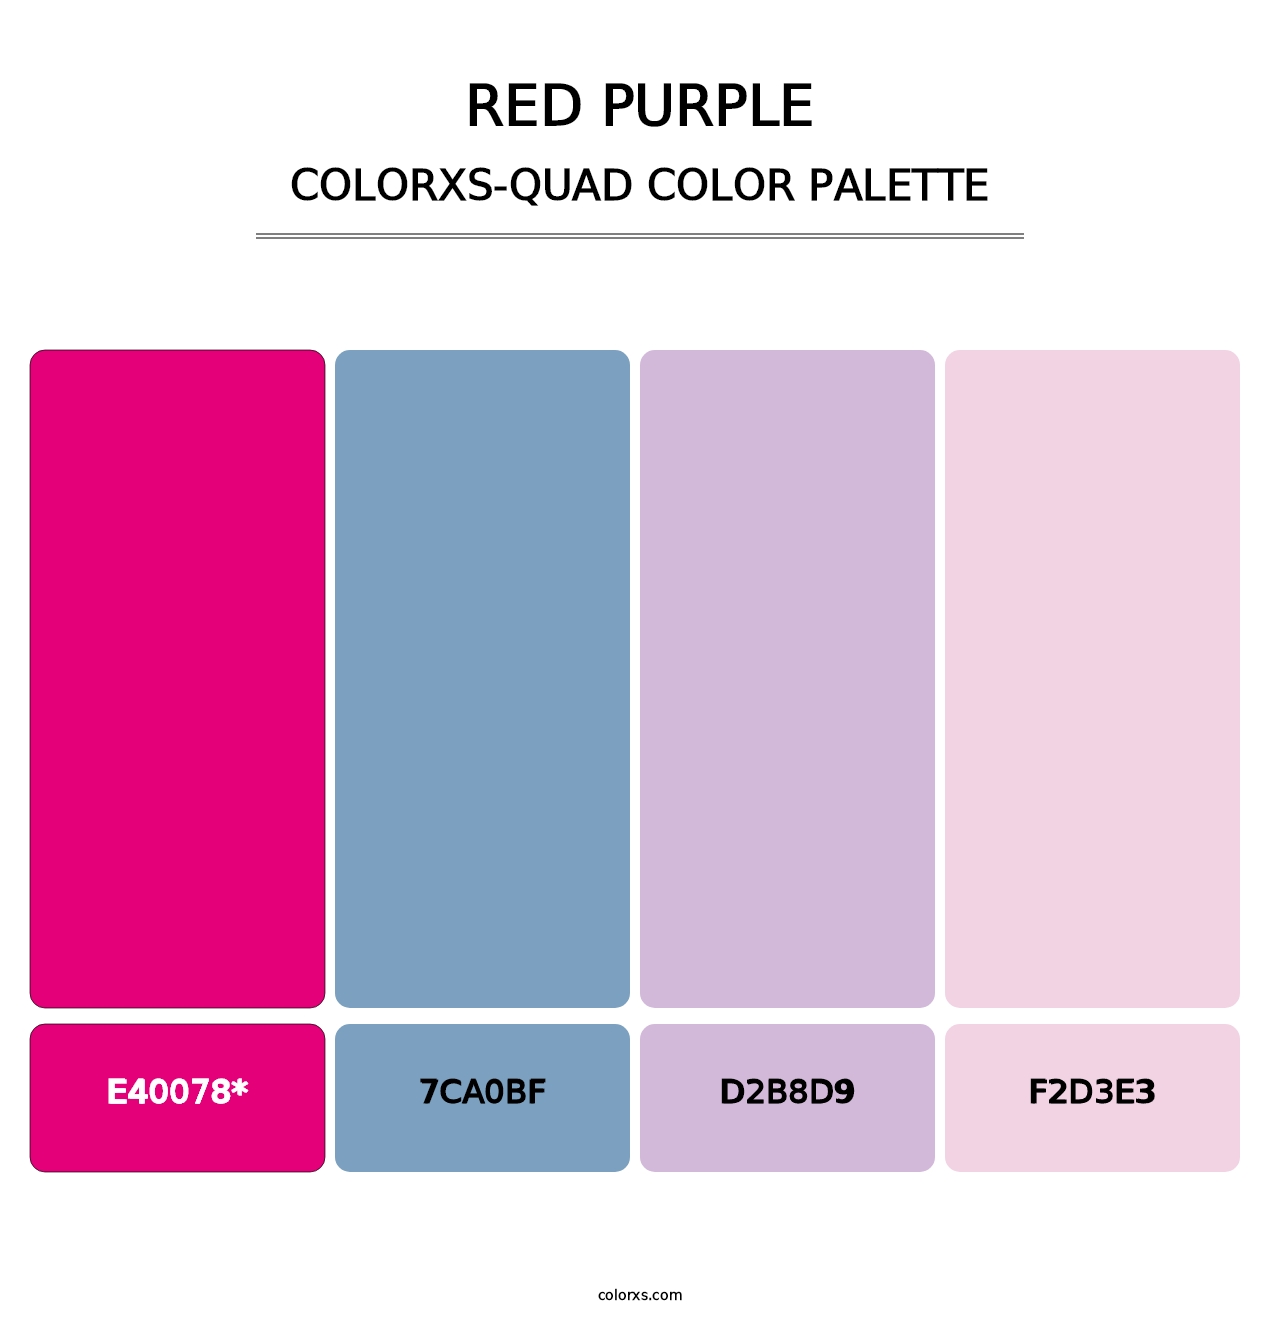 Red Purple - Colorxs Quad Palette